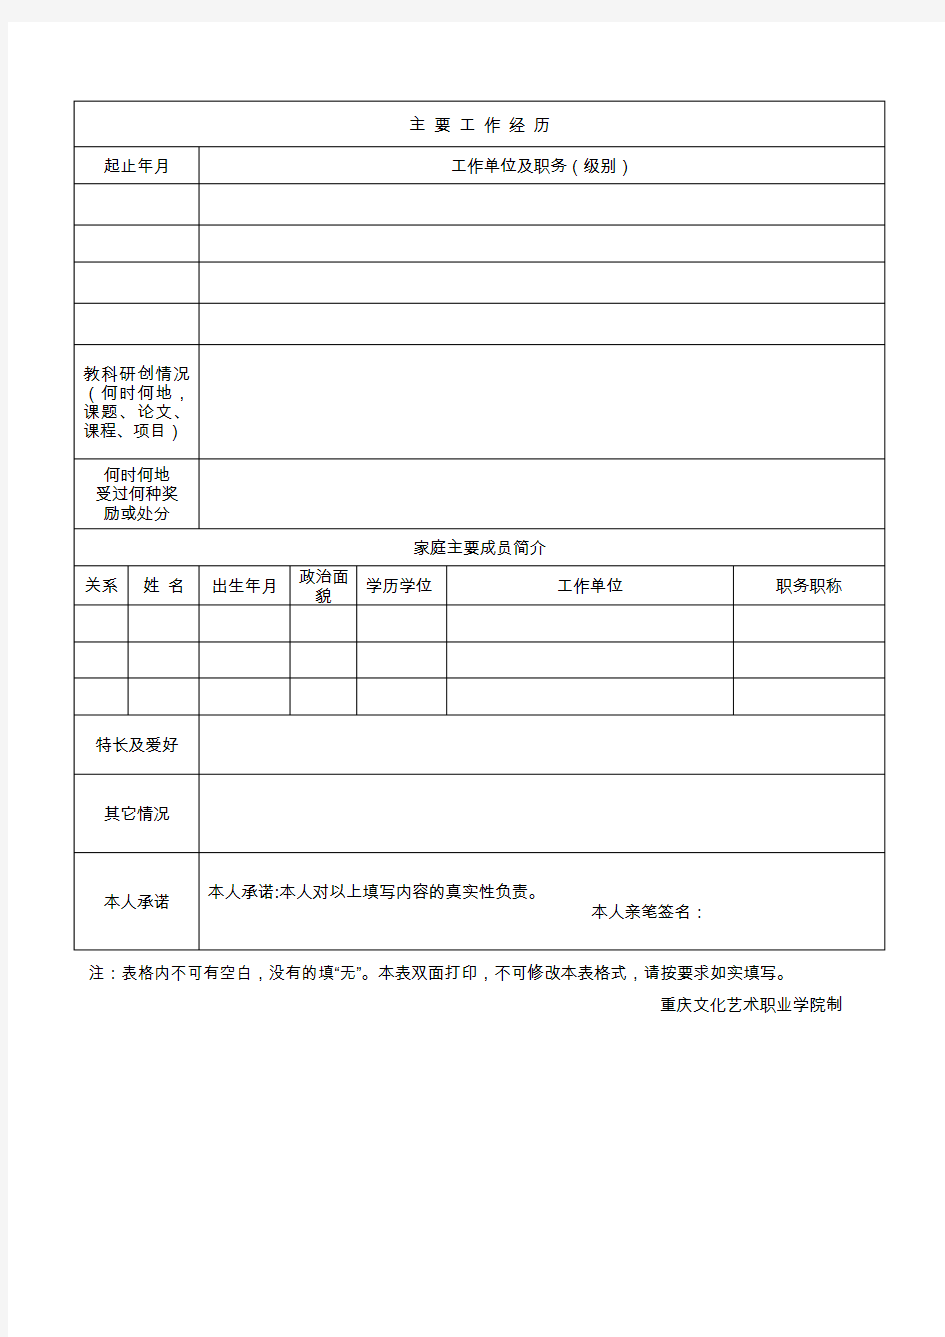 重庆文化艺术职业学院2019年上半年公开招聘事业单位工作人员报名登记表